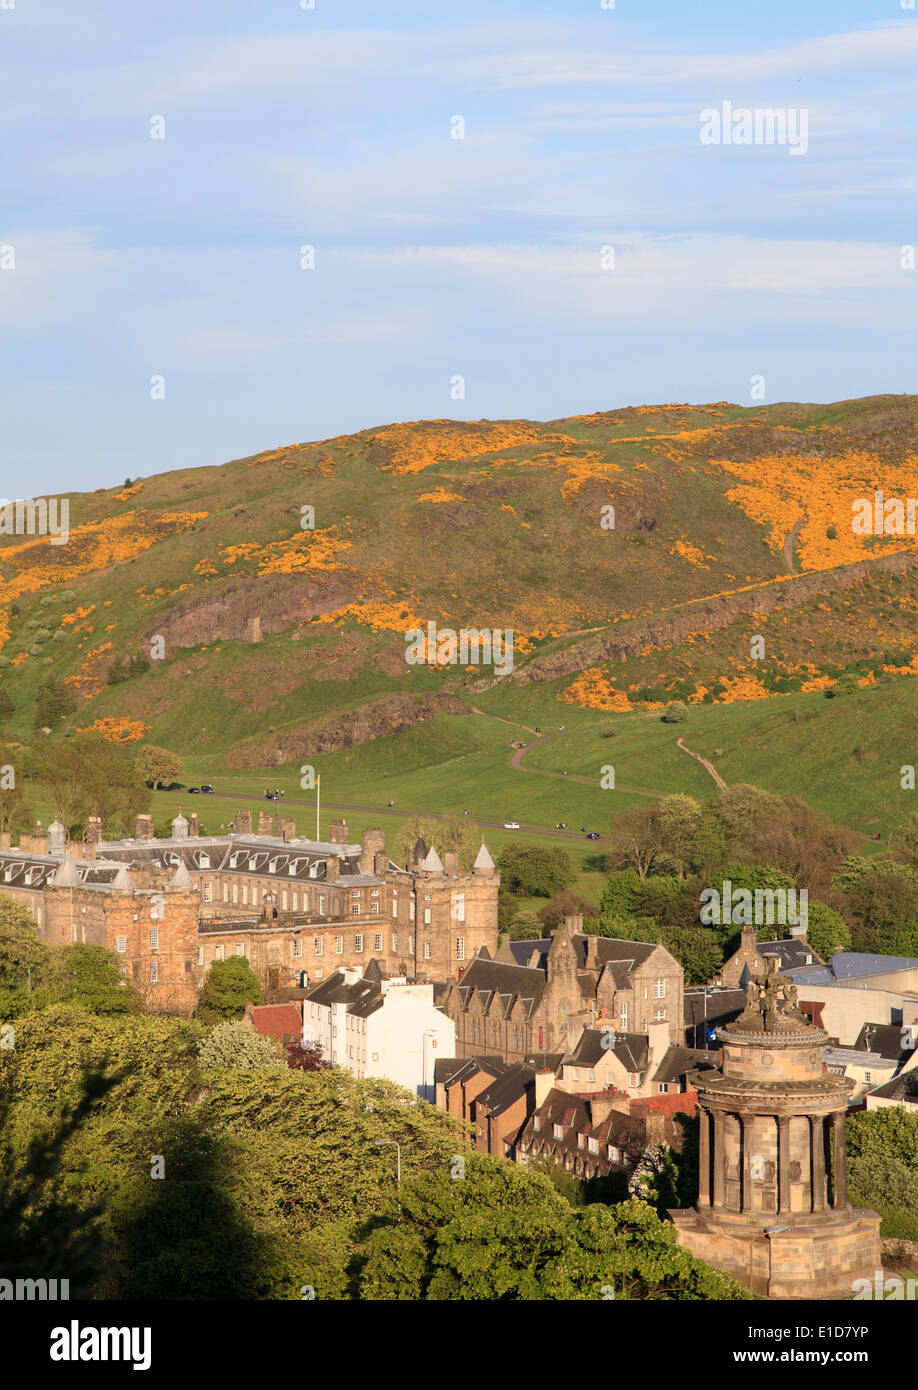 UK, Scotland, Edinburgh, Holyrood Park, Palace of Holyroodhouse, Stock Photo